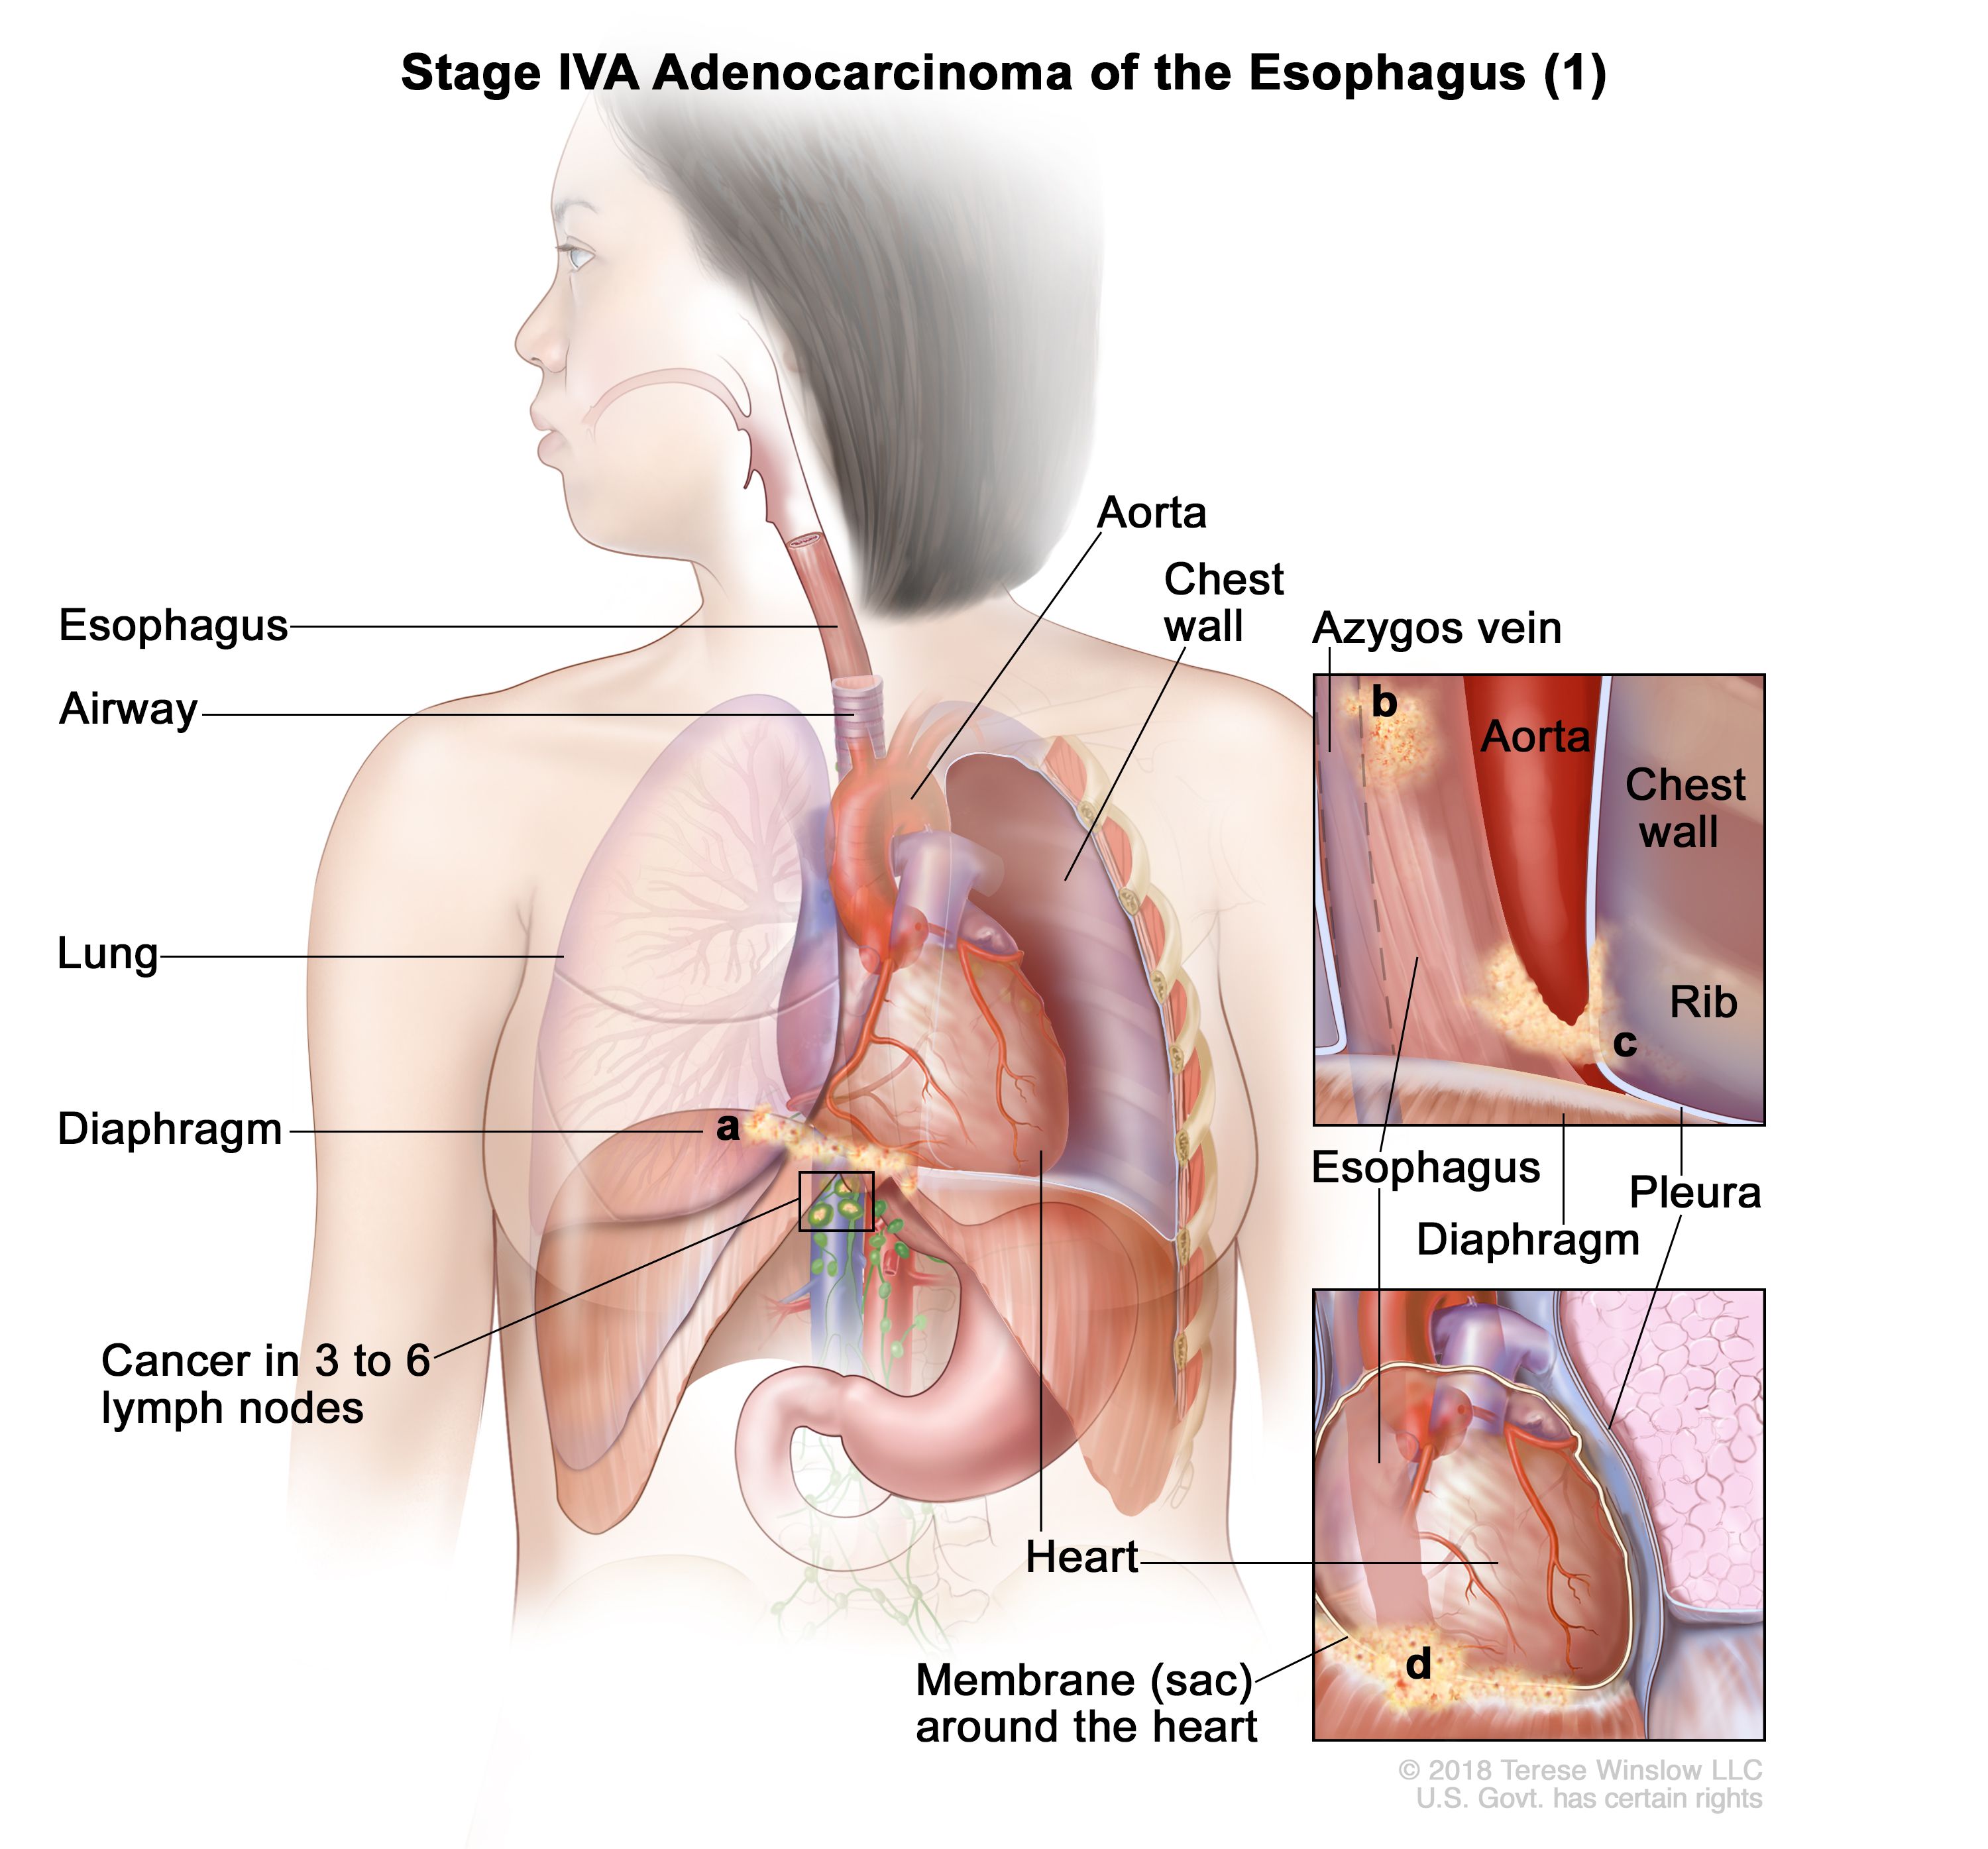 Adenocarcinoma de esófago en estadio IVA